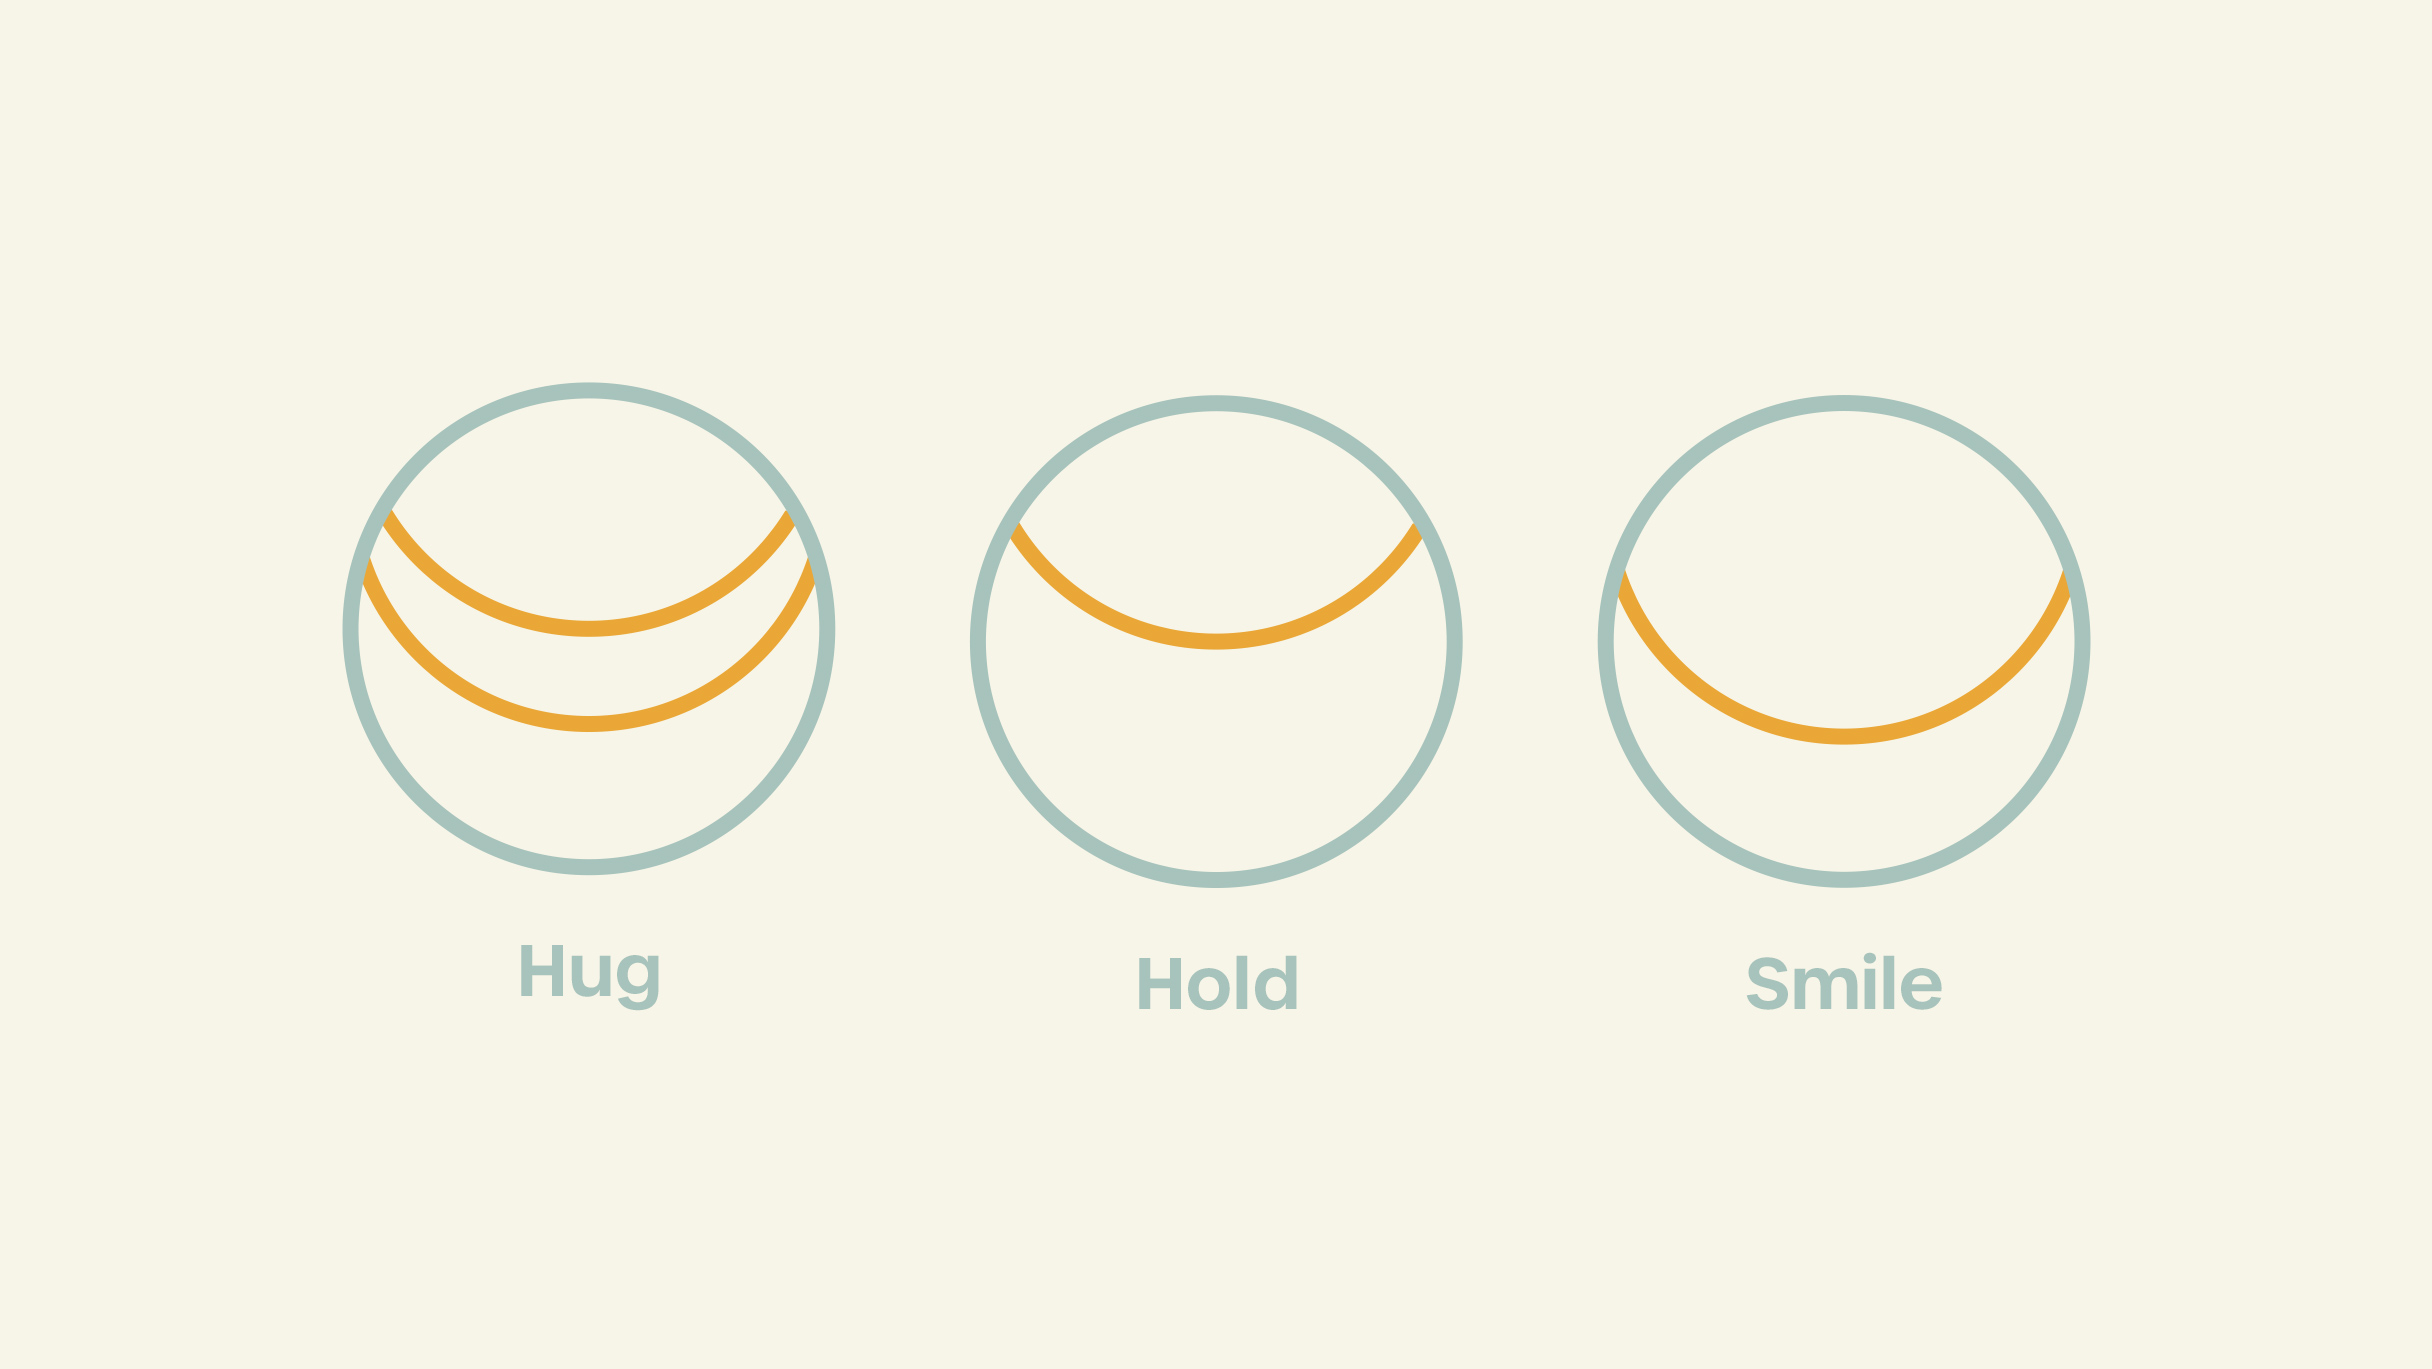 Herleitung Mochiti Idee: Drei Kreise für Hug, Hold, Smile